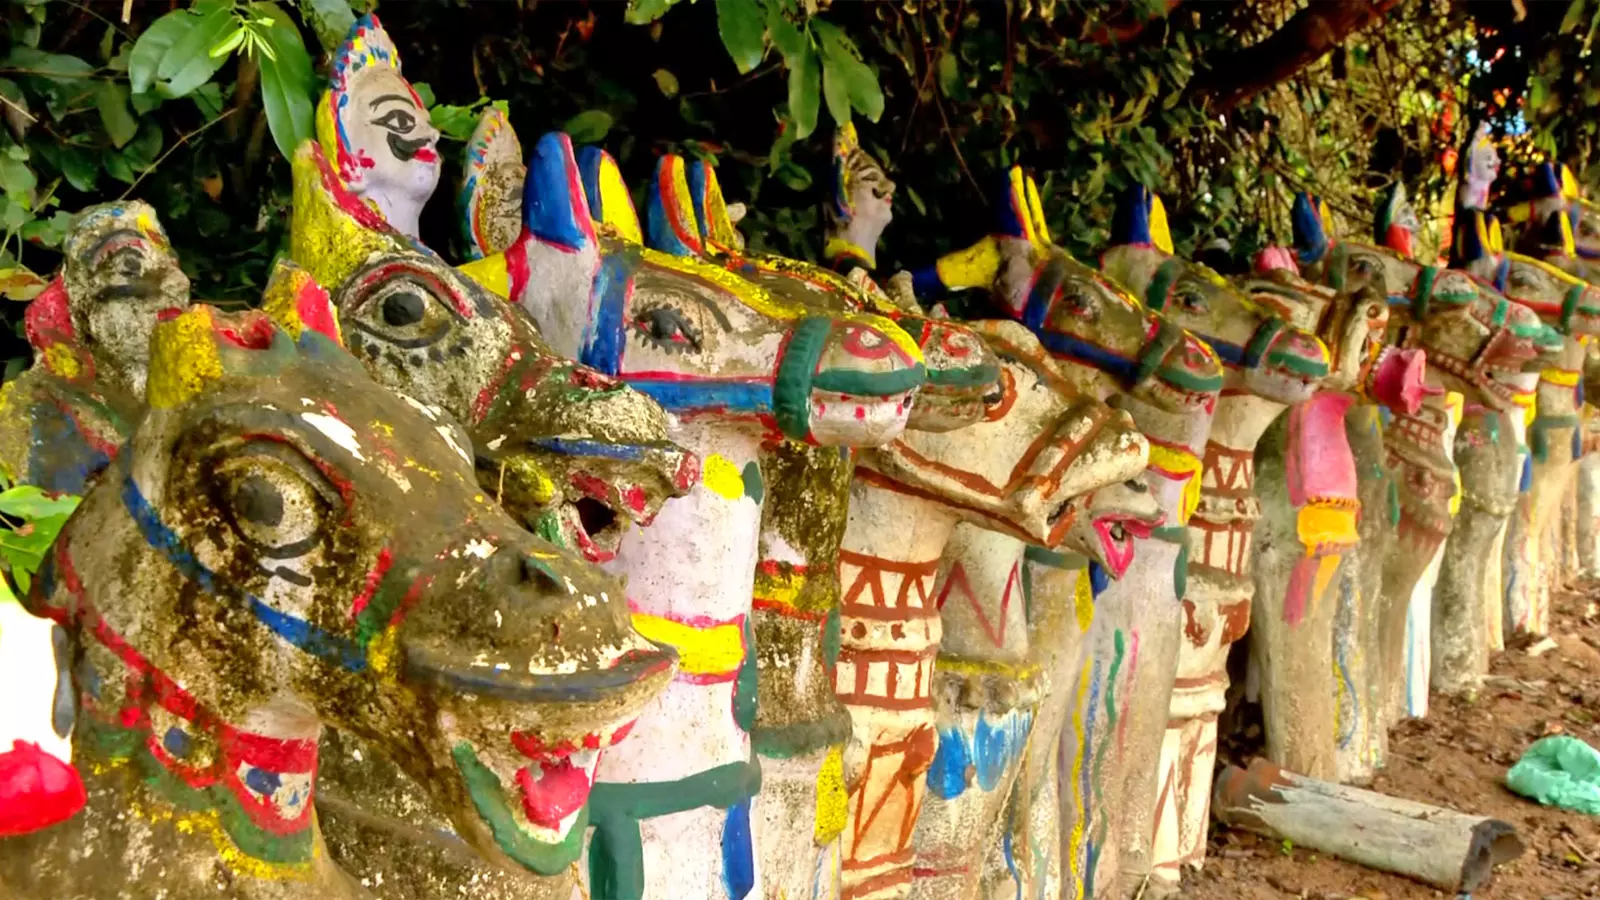 Horse figurines in a sacred grove in Viluppuram.